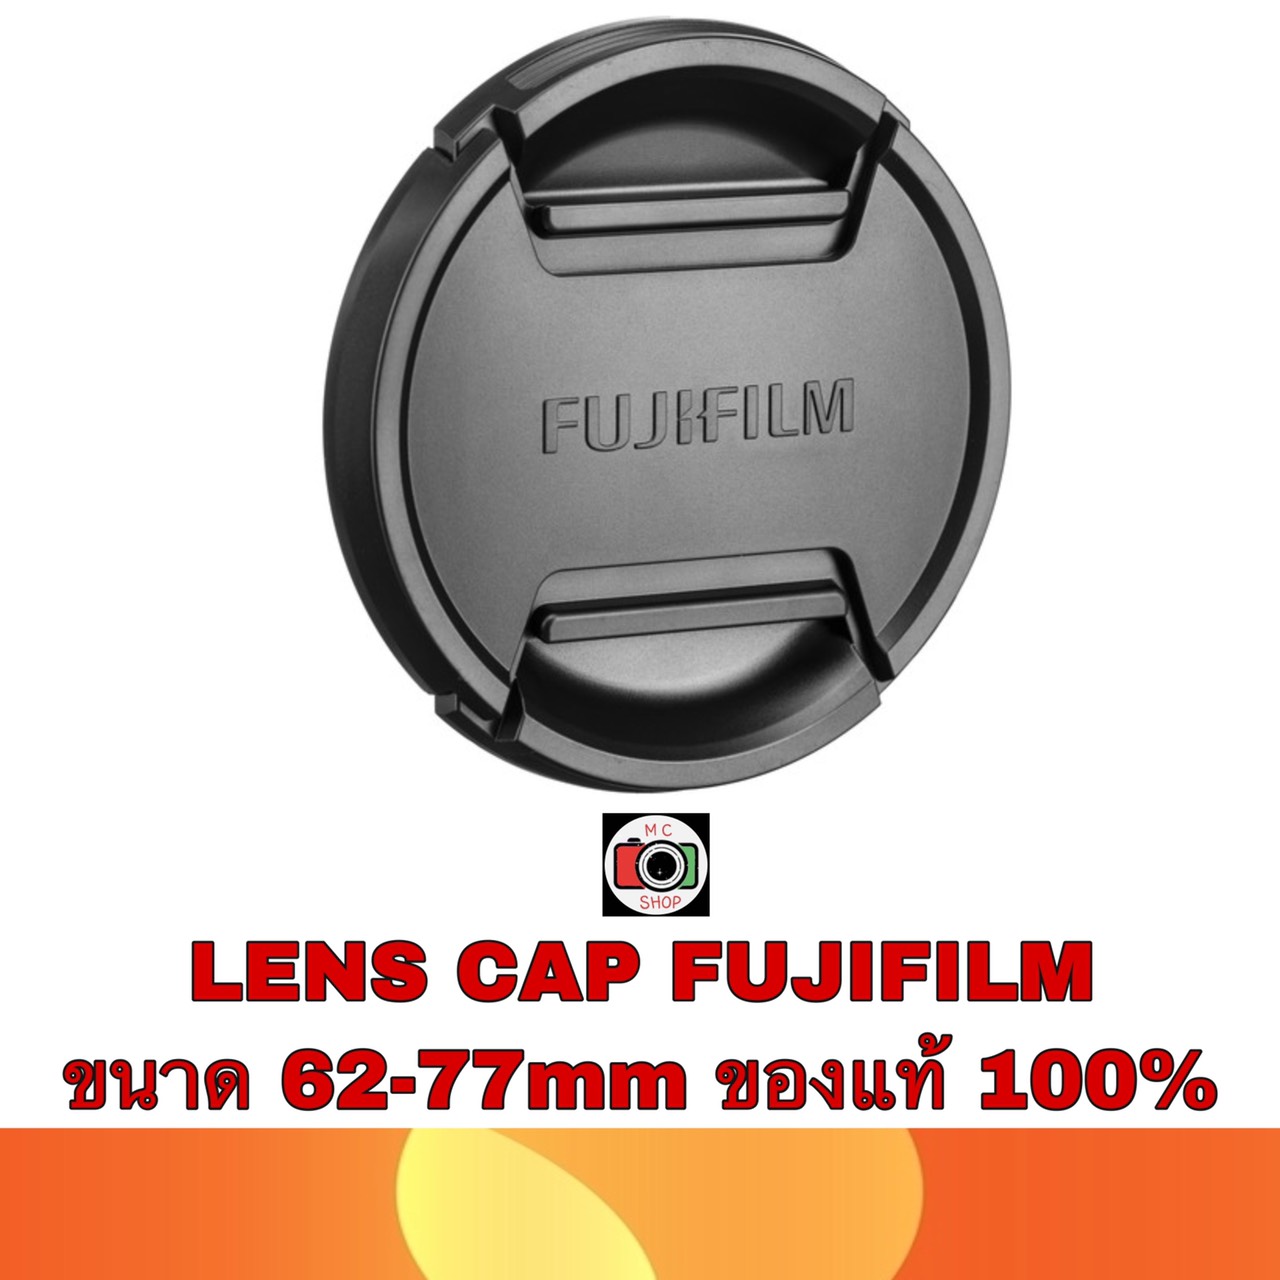 LENS CAP FUJI FLCP-62mmII,67mmII,72mmII,77mmII ของแท้ 100% (เช็คขนาดหน้าเลนส์ให้ถูกต้องด้วยก่อนกดสั่งซื้อ)